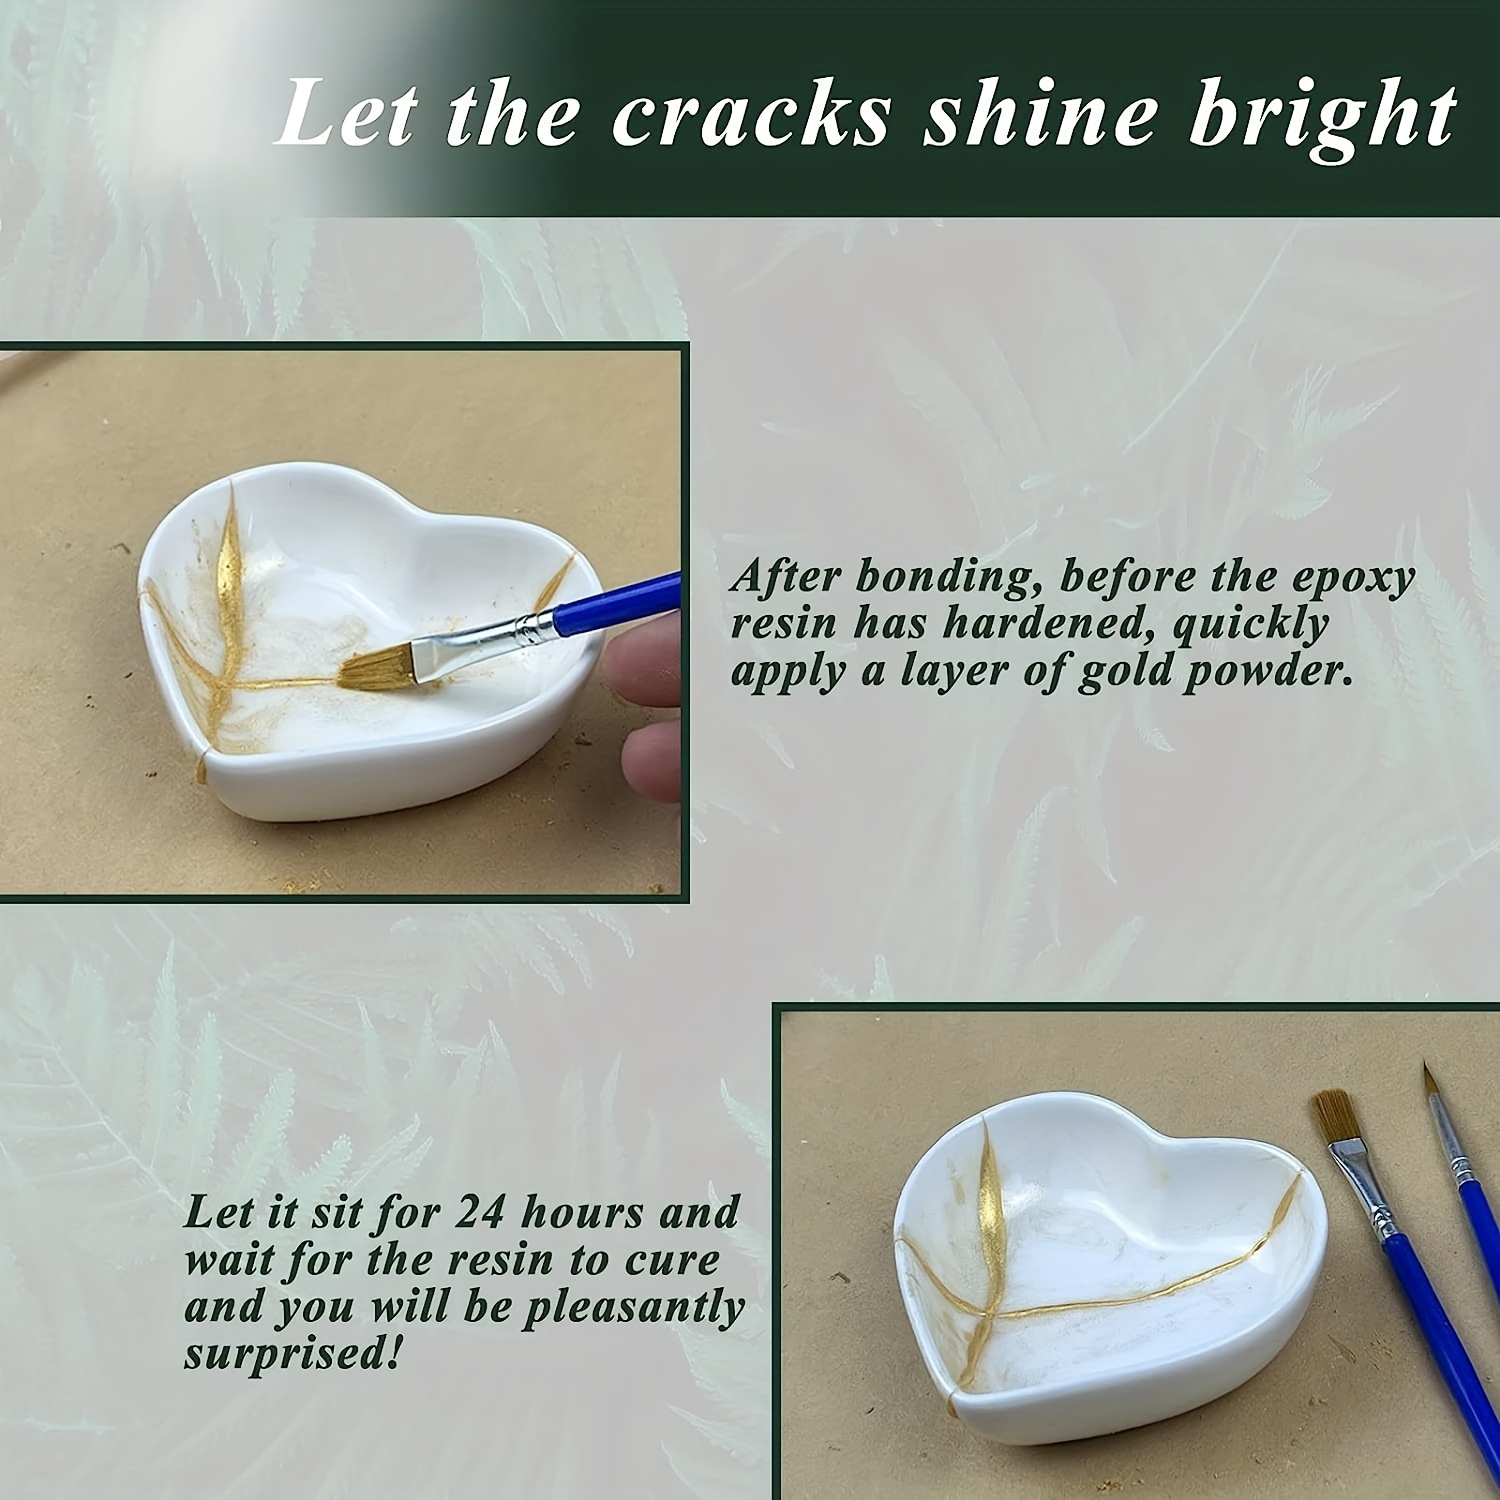 Kintsugi Repair Kit Repair Your Meaningful Pottery with Gold Powder 50ml  Glue Japanese KINTSUGI Ceramic Repair